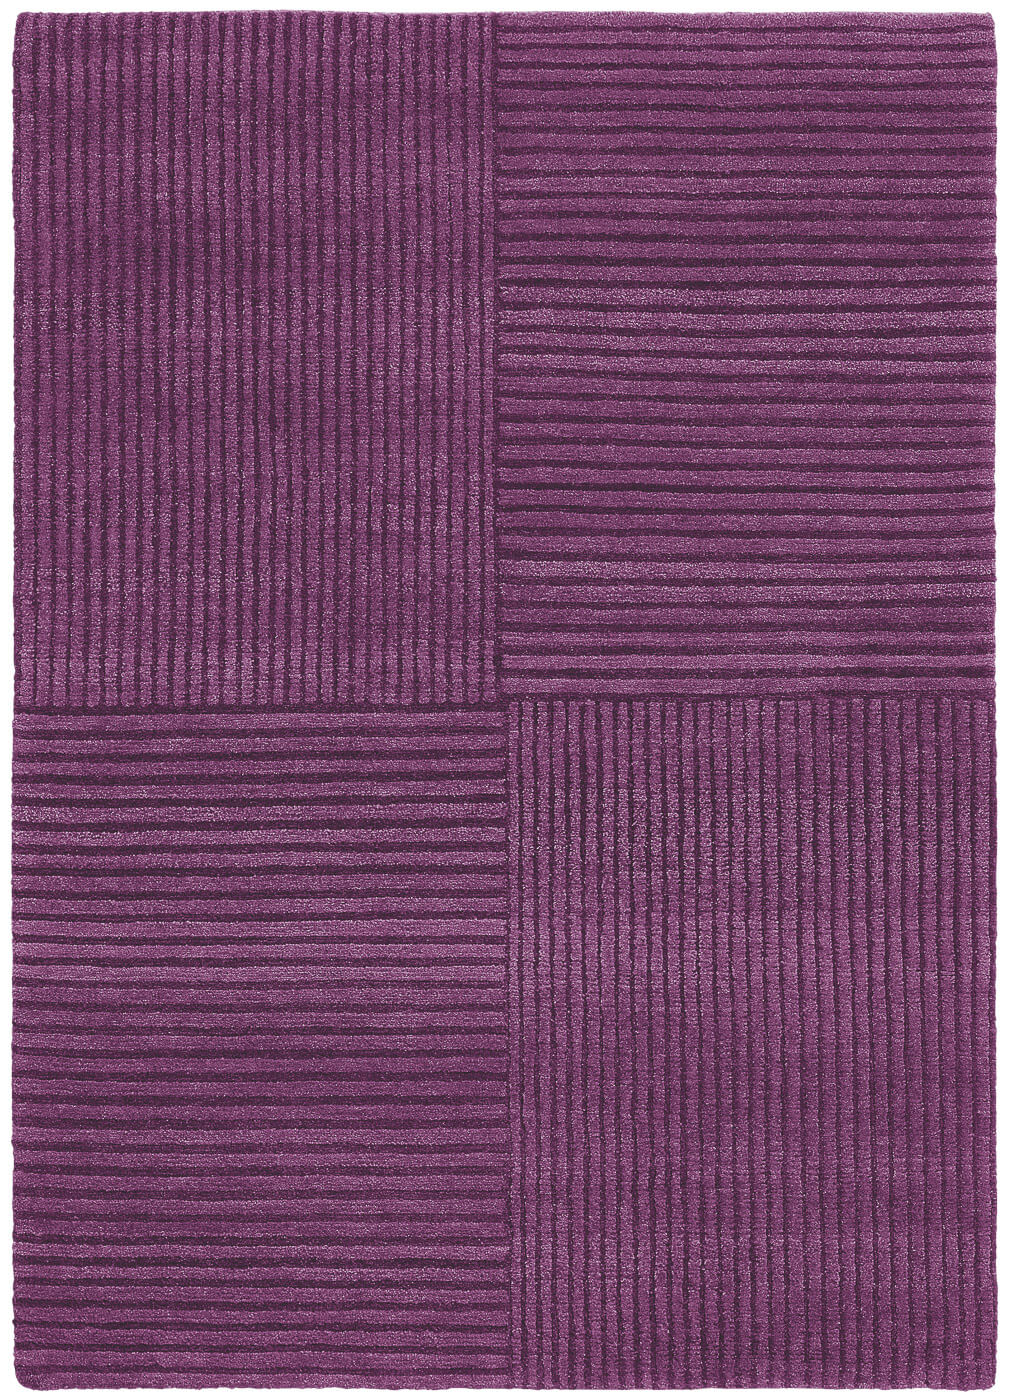 Purple Hand-woven Luxury Rug ☞ Size: 300 x 400 cm